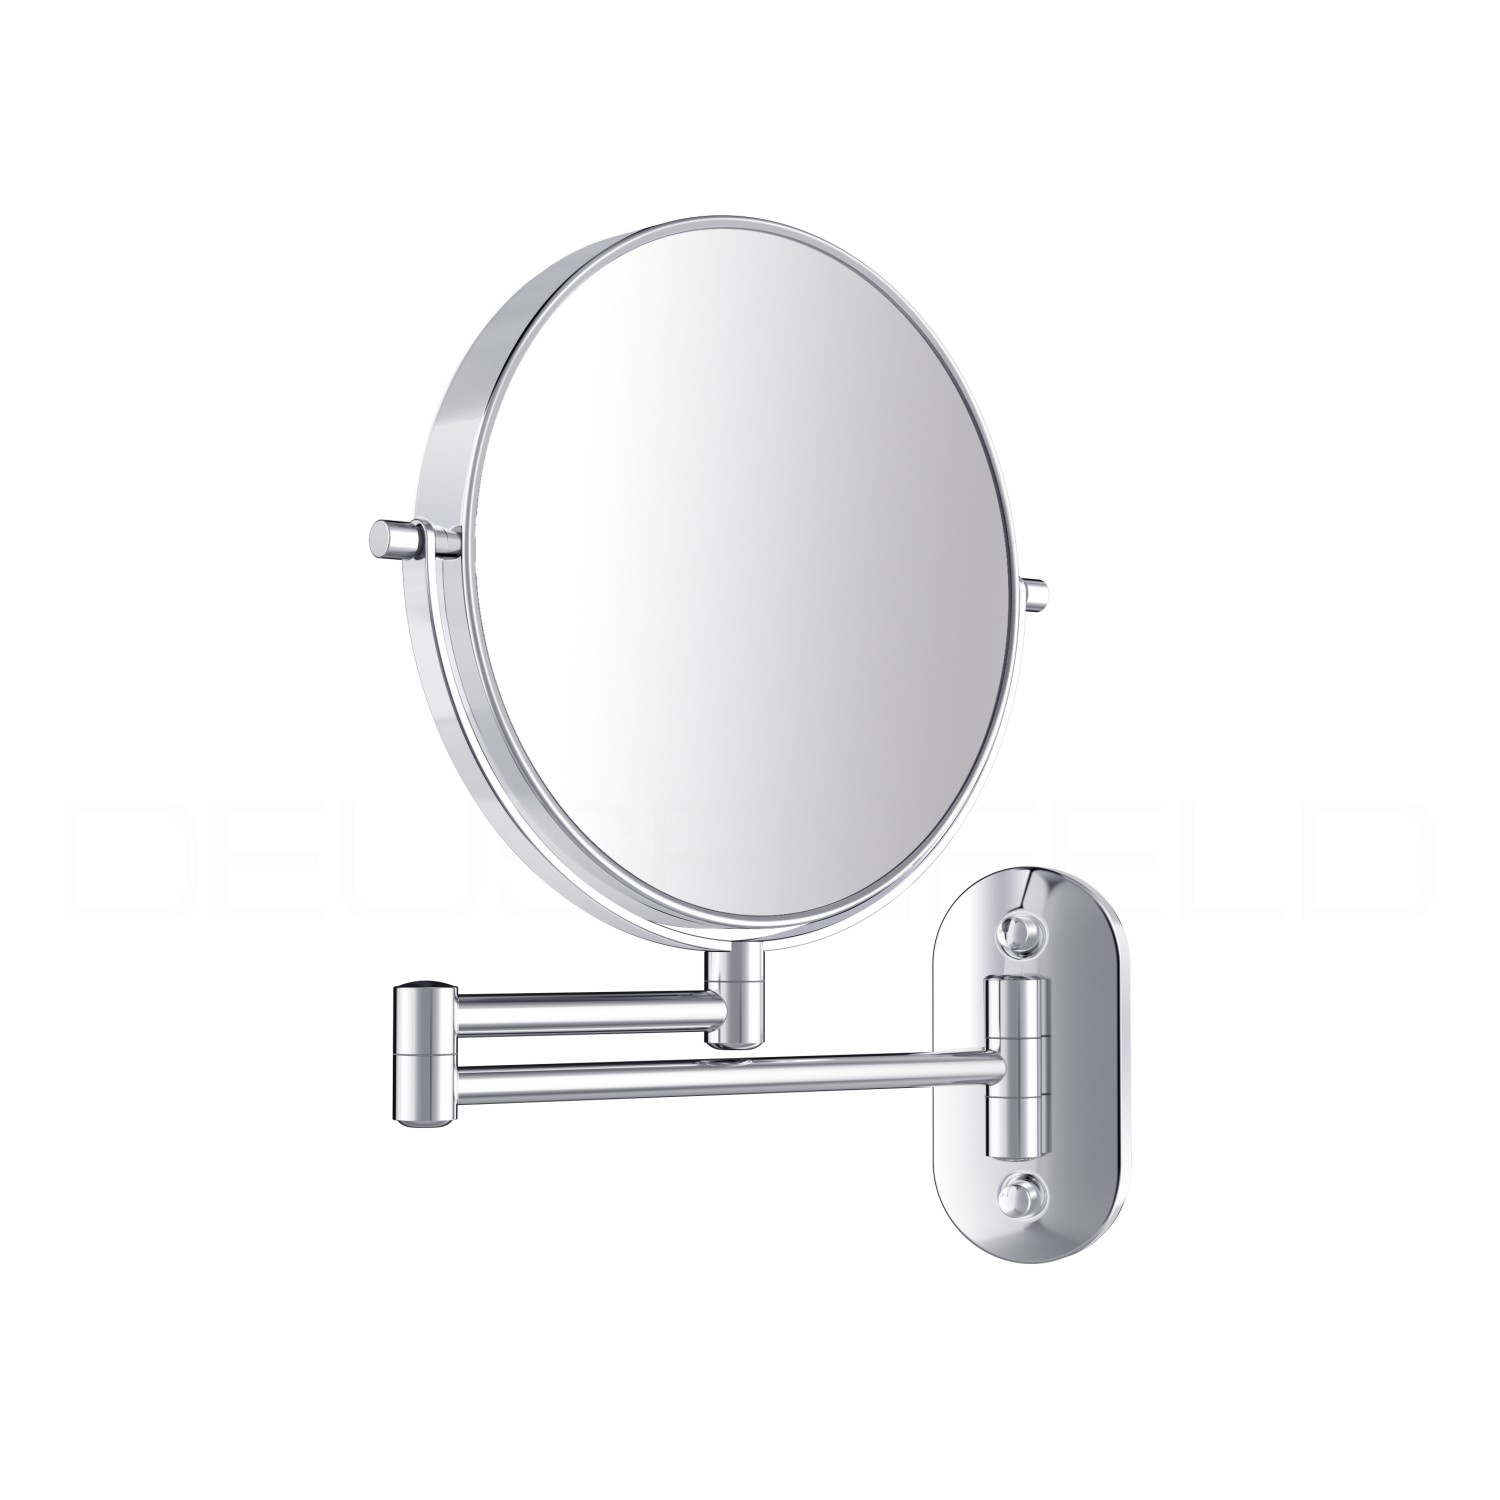 Kosmetikspiegel online kaufen  MAEDJE KG - DEUSENFELD KW102C - Doppel Wand  Kosmetikspiegel, 10x Vergrößerung + Normalspiegel, Ø20cm, 360° vertikal und  horizontal schwenkbar, hochglanz verchromt